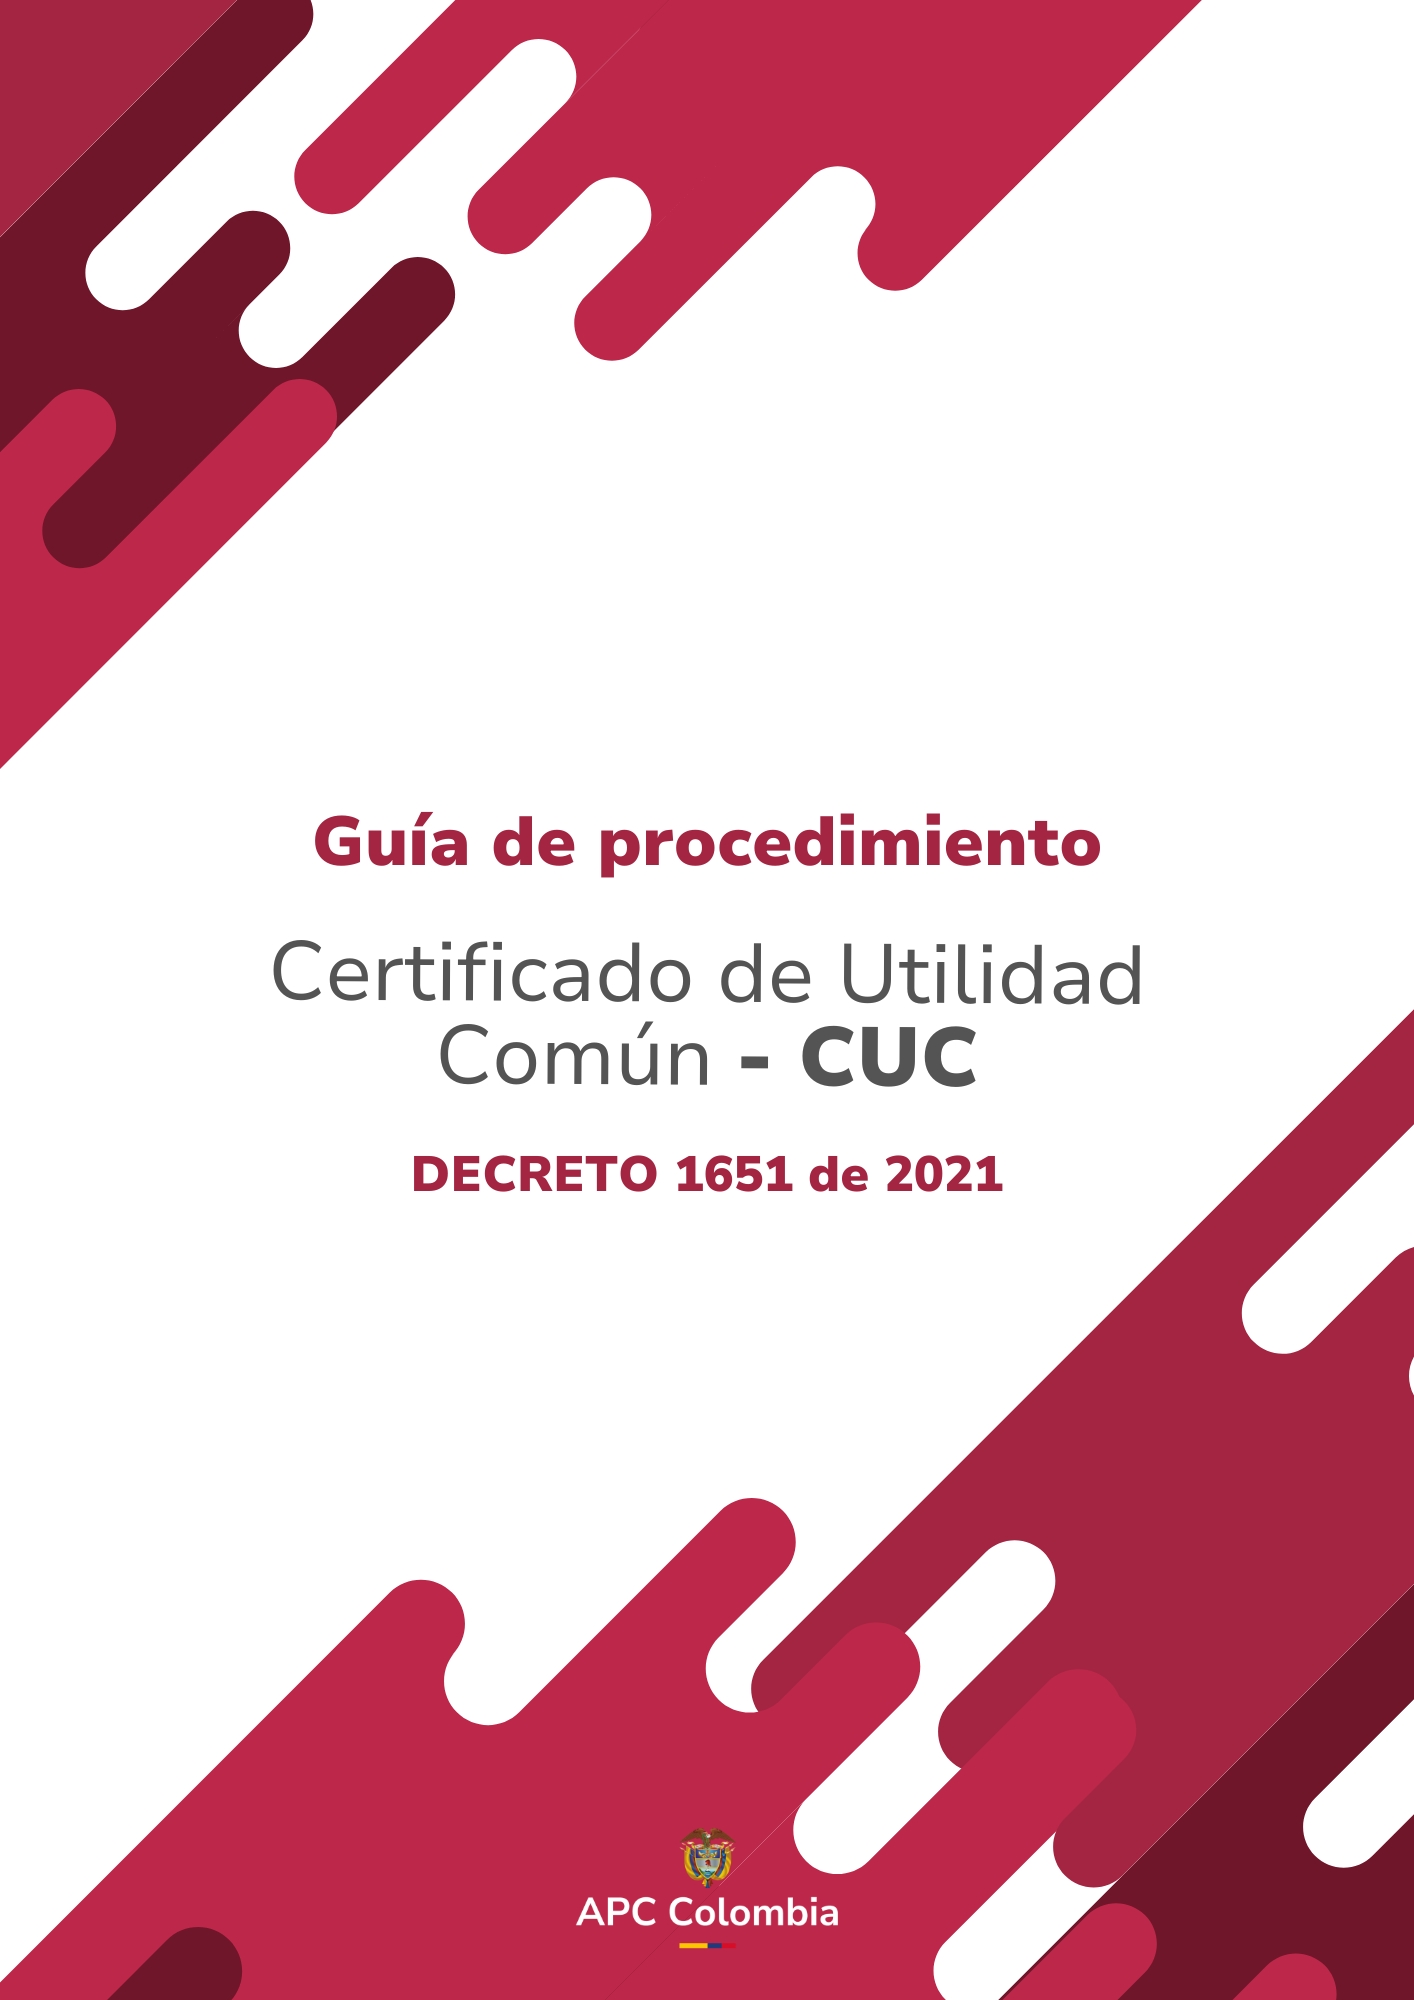 Portada de la Guía de procedimiento Certificado de Utilidad Común - CUC